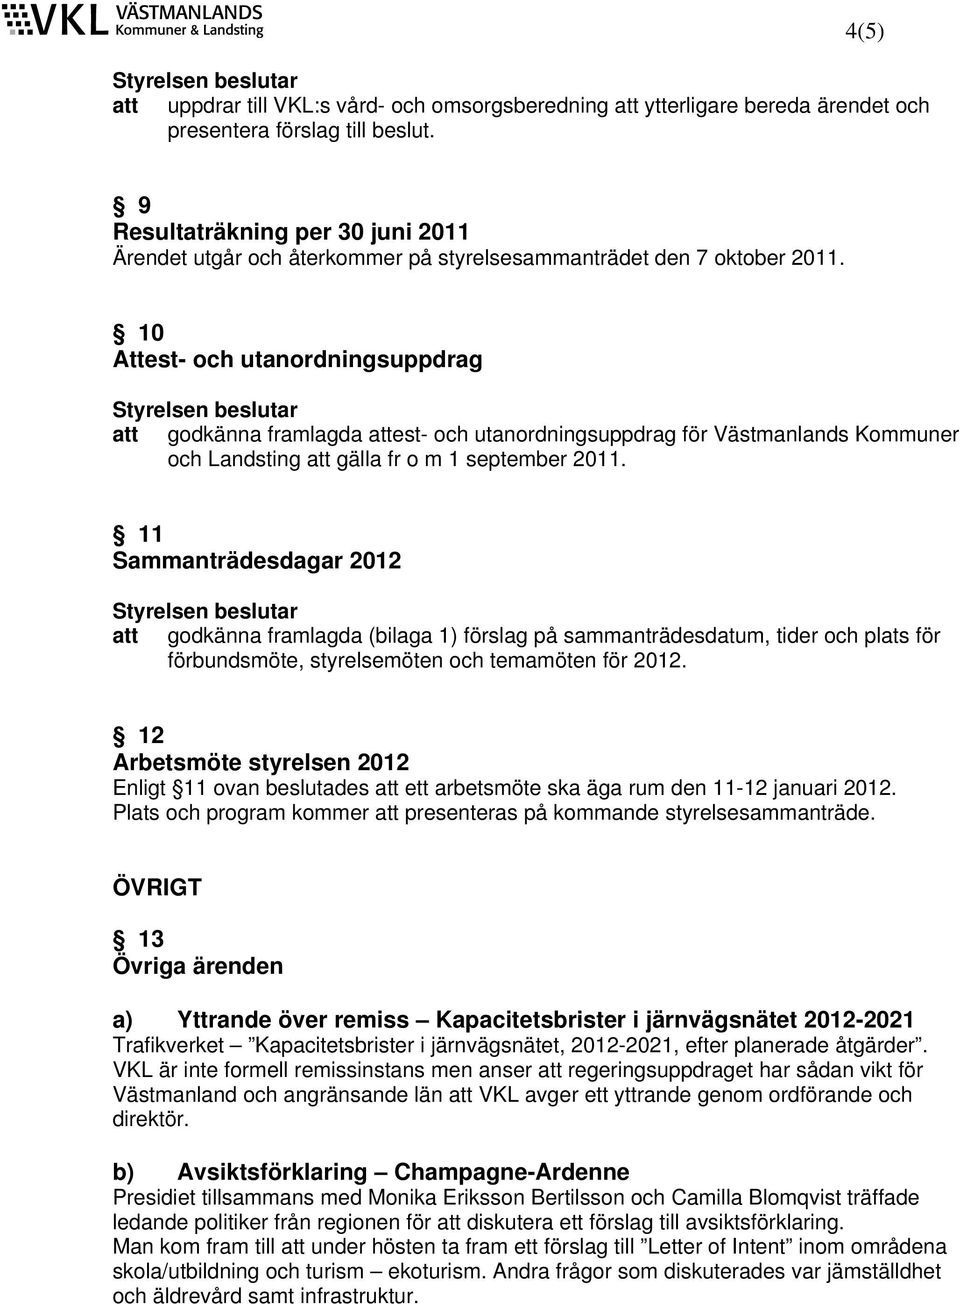 10 Attest- och utanordningsuppdrag att godkänna framlagda attest- och utanordningsuppdrag för Västmanlands Kommuner och Landsting att gälla fr o m 1 september 2011.